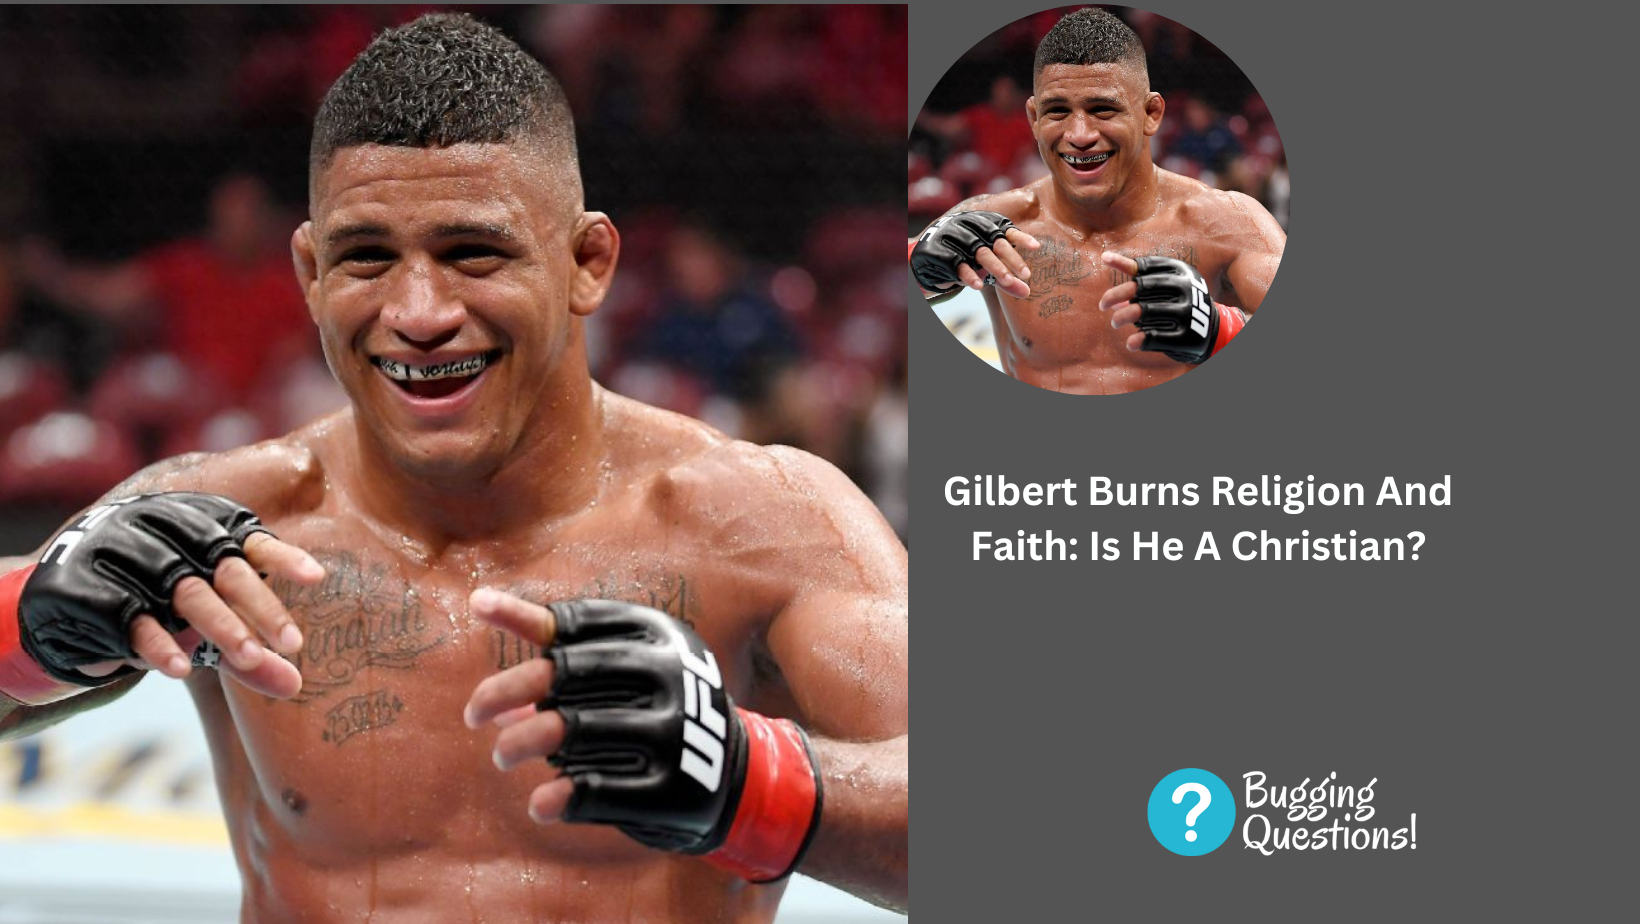 Gilbert Burns Religion And Faith: Is He A Christian?